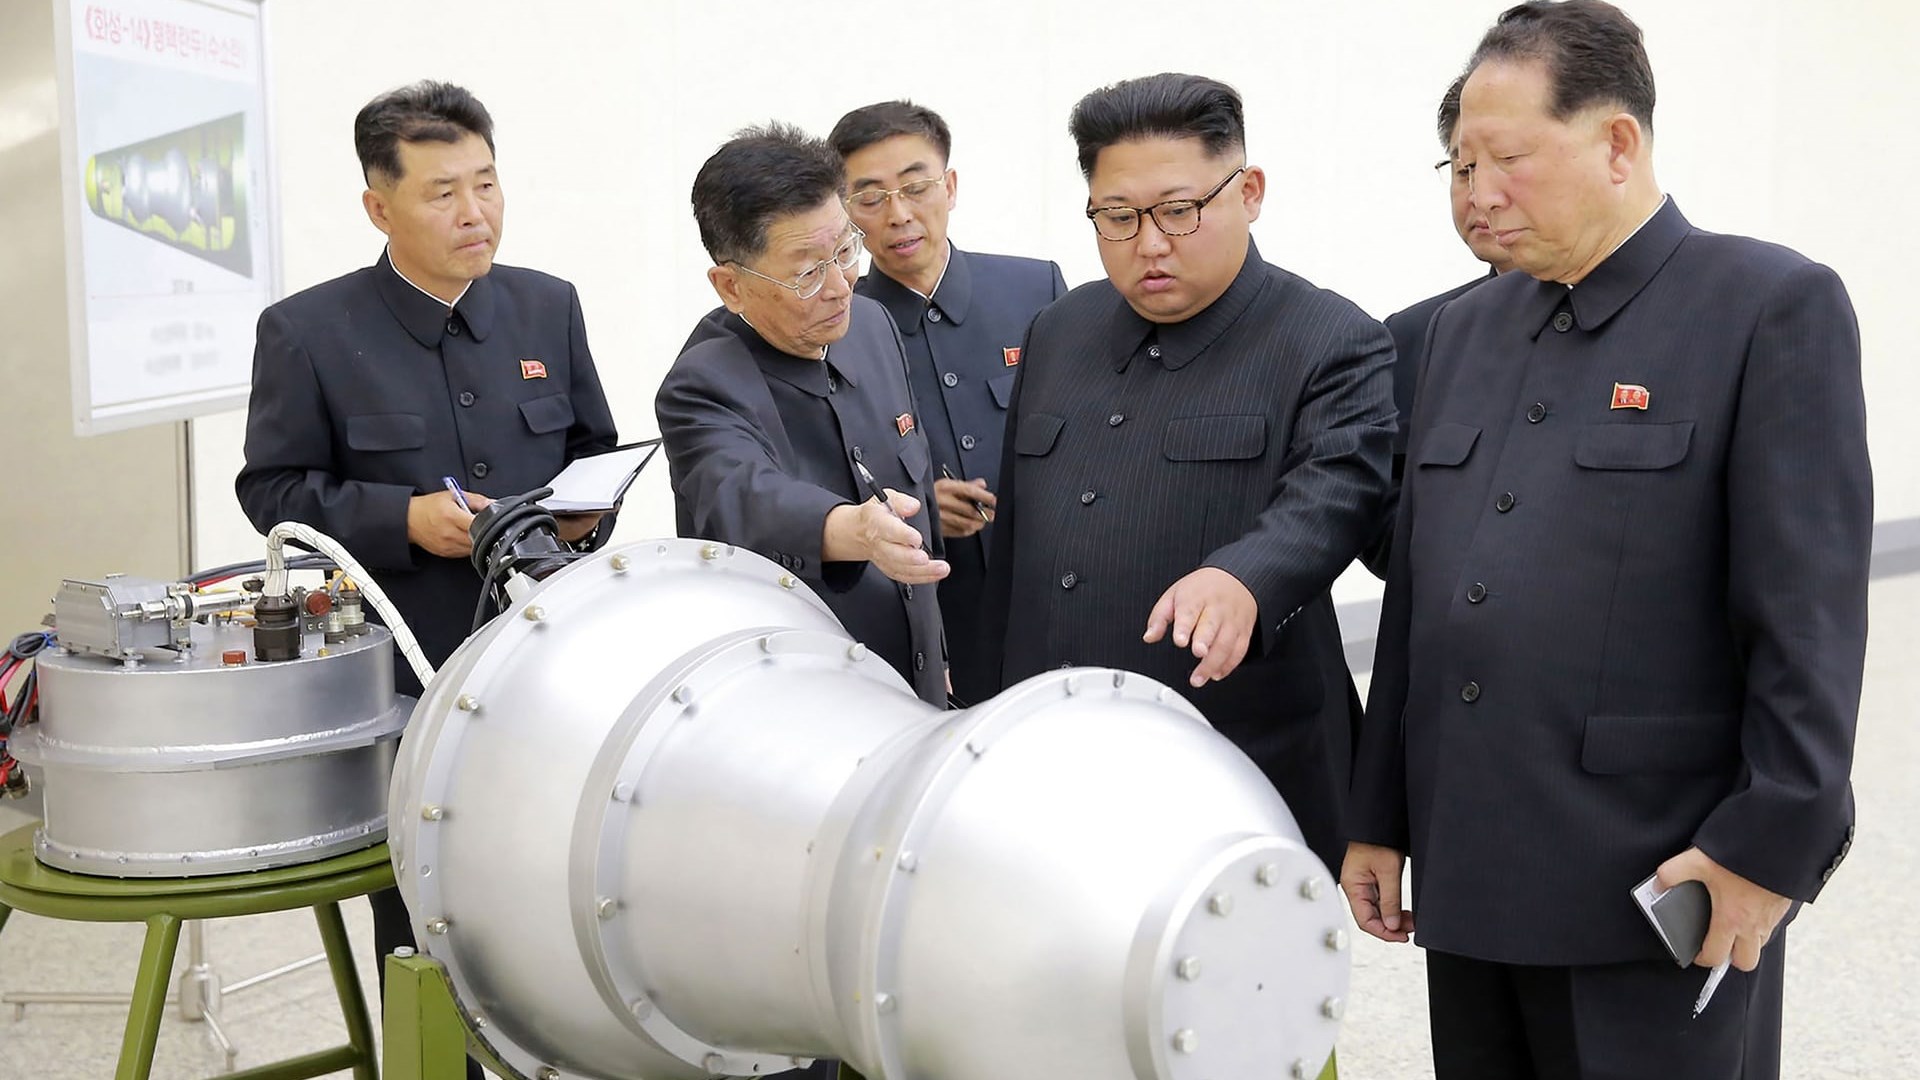 Ο Κιμ Γιονγκ Ουν προκαλεί παγκόσμια ανησυχία – Ο ισχυρός σεισμός στη Βόρεια Κορέα και η νέα πυρηνική δοκιμή